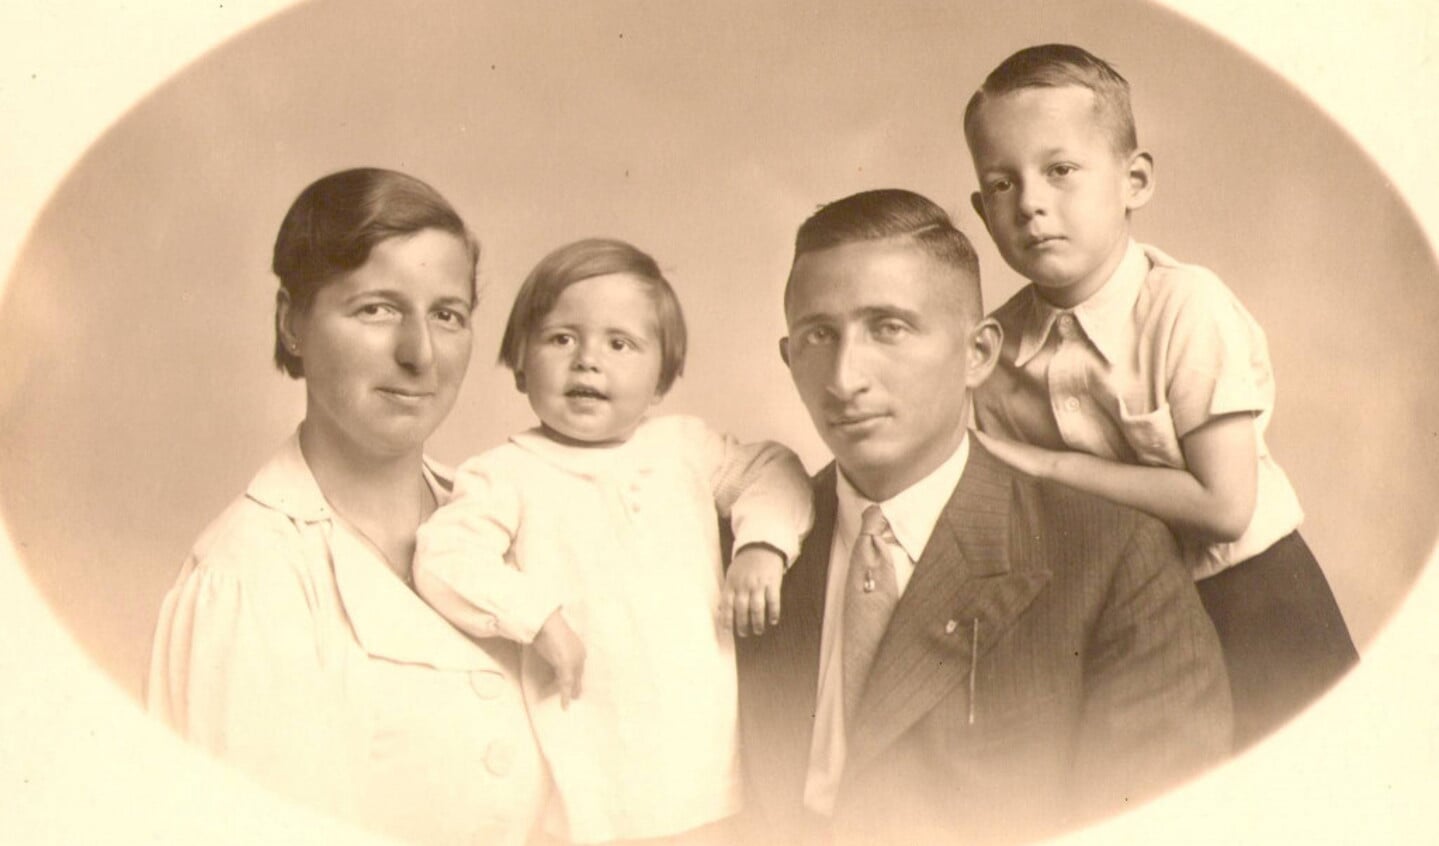  Het gezin snoep in het midden van de jaren ’30 (collectie Erven J.L. Snoep / W. de Waard)., https://brugnieuws.nl/uploads/a19fc24ac7d547e9ed0ee064a7c91b5595af1a45.jpg 